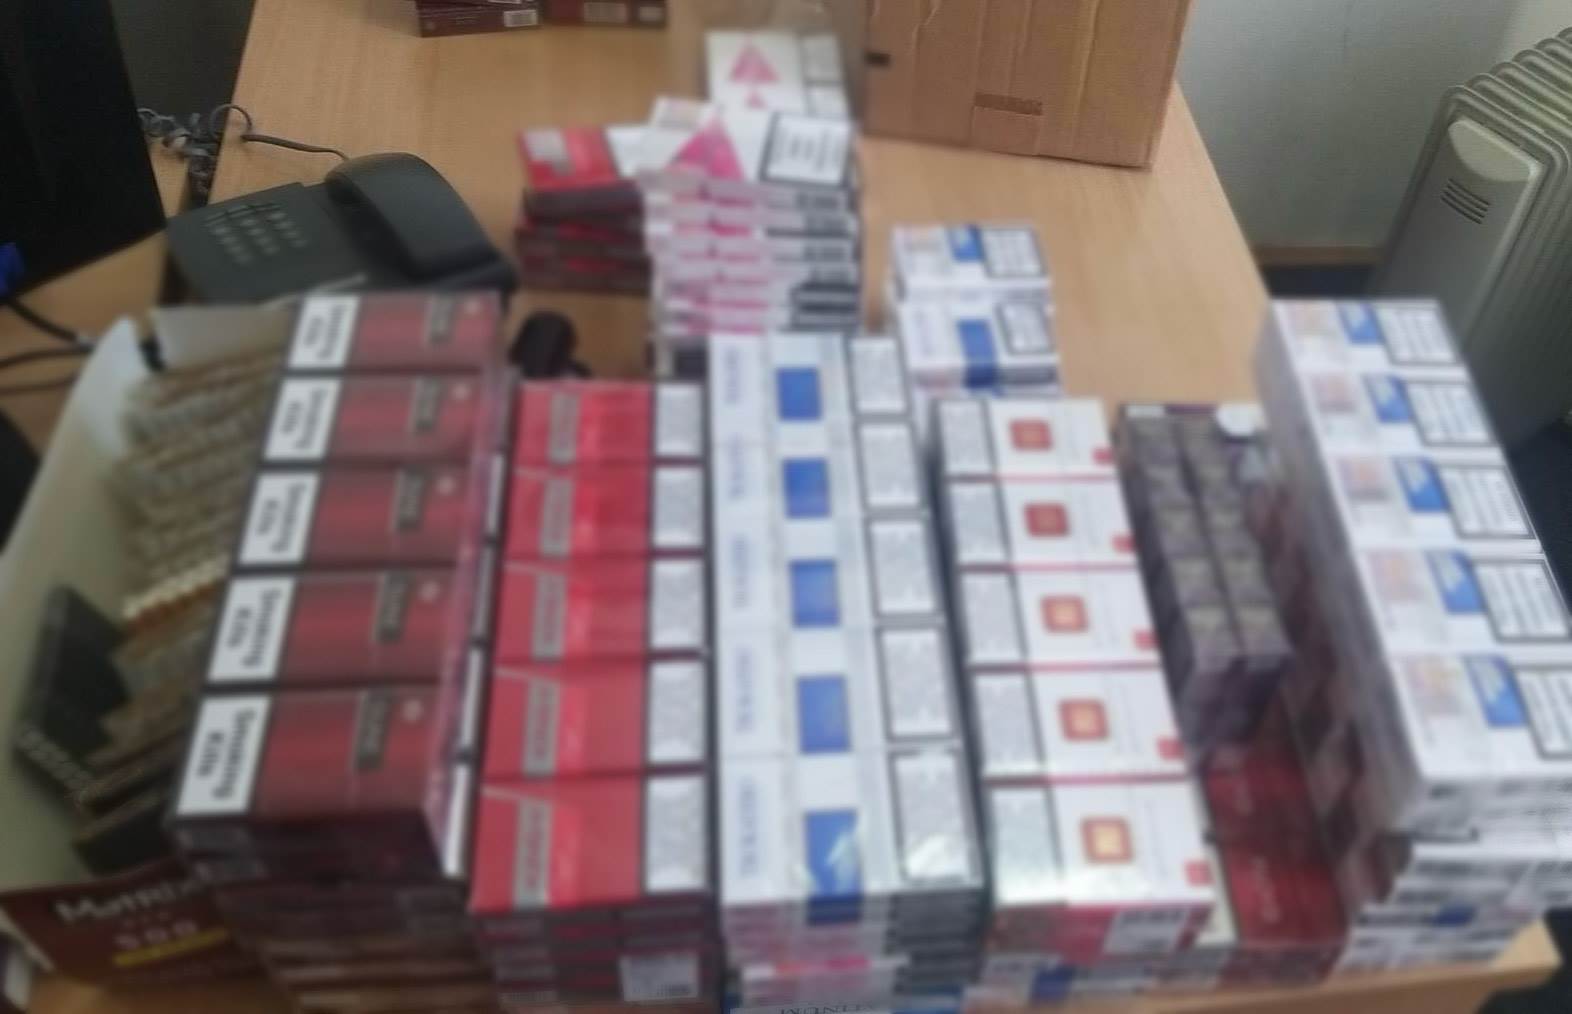  U Nikšiću uhapšene dvije osobe zbog ilegalne prodaje cigareta 